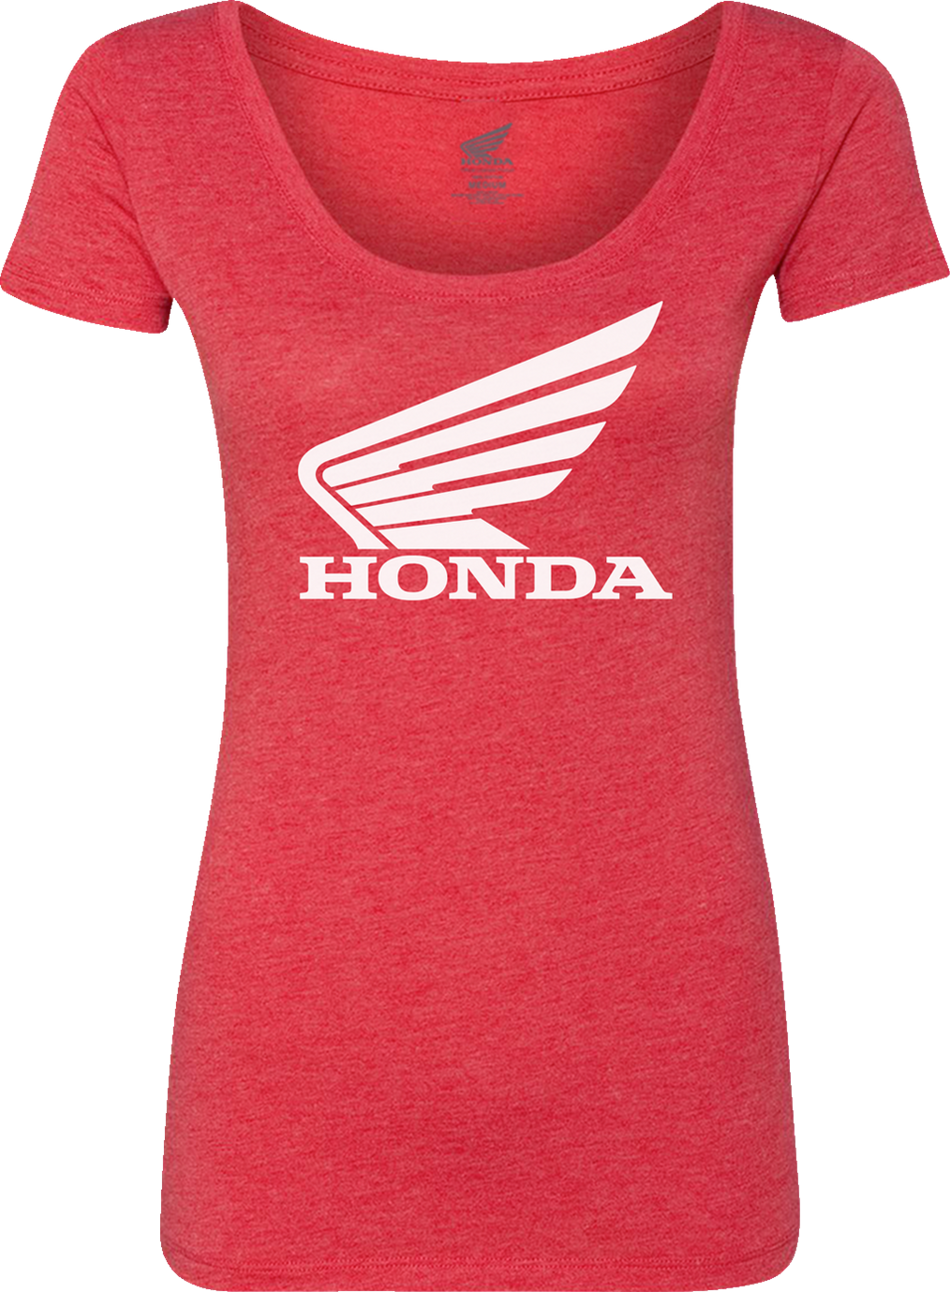 HONDA APPAREL Women's Honda Wing T-Shirt - Red - Medium NP21S-L3029-M